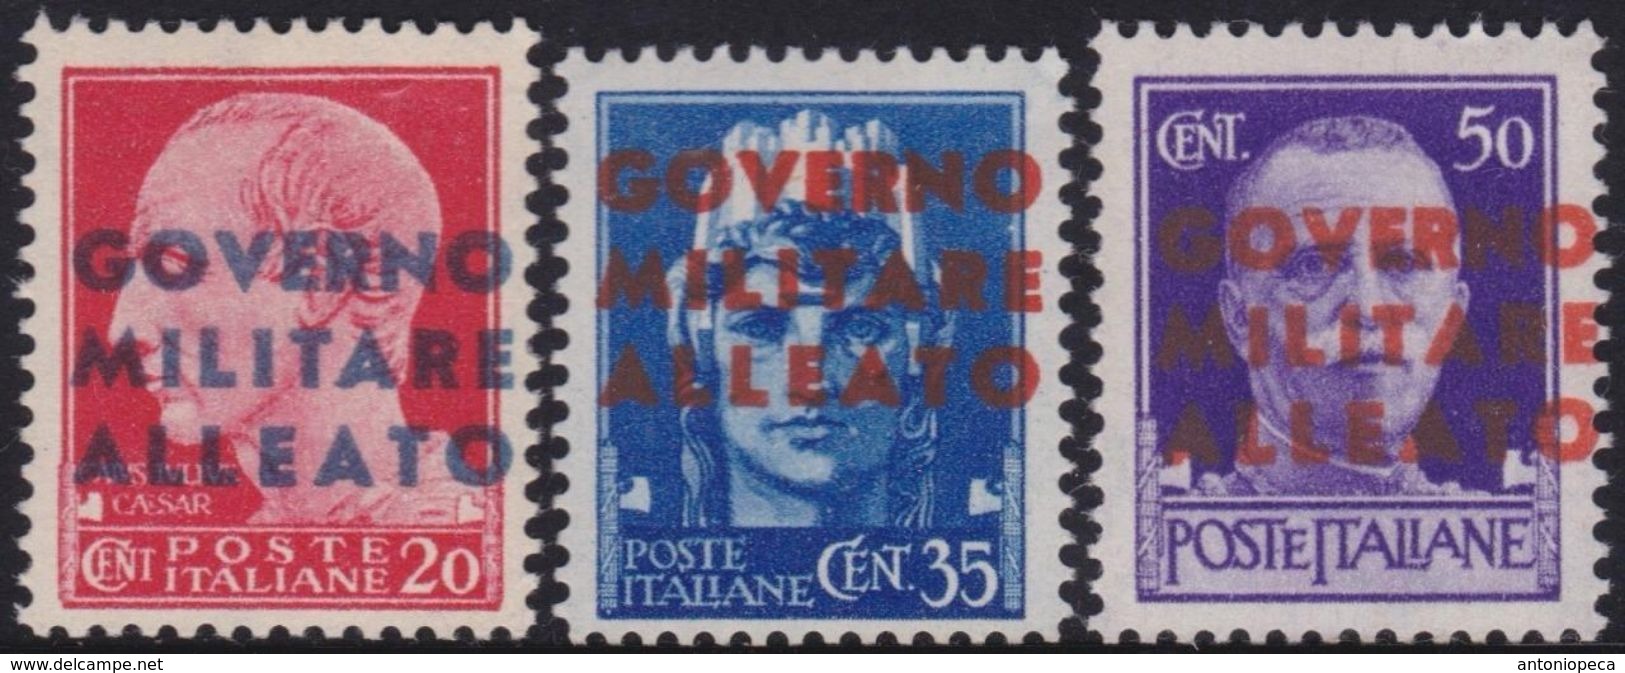 OCCUPAZIONE ALLEATA NAPOLI 1943 Serie Completa 3v​ Gomma Integra, MNH** - Anglo-american Occ.: Naples